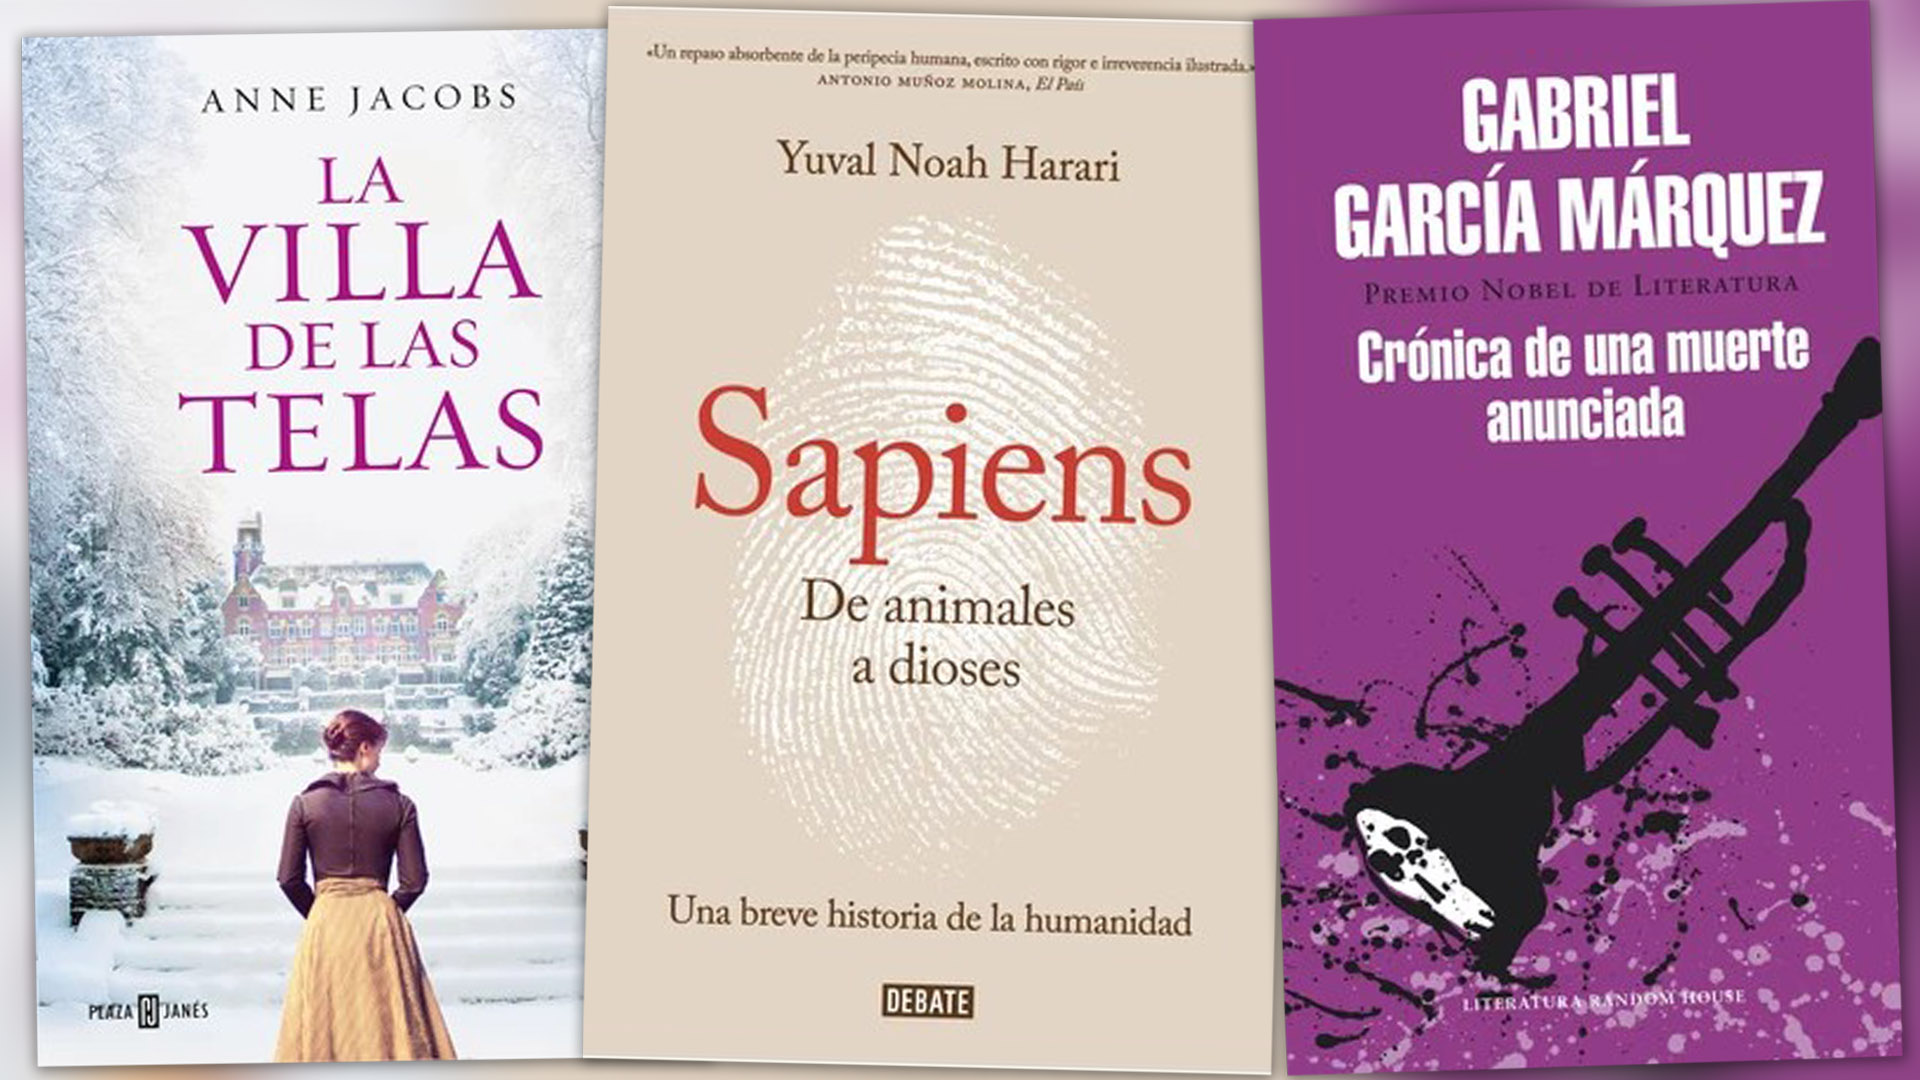 Qué leer el fin de semana: tres bestsellers de García Márquez, Harari y Jacobs con descuento para aprovechar el descanso